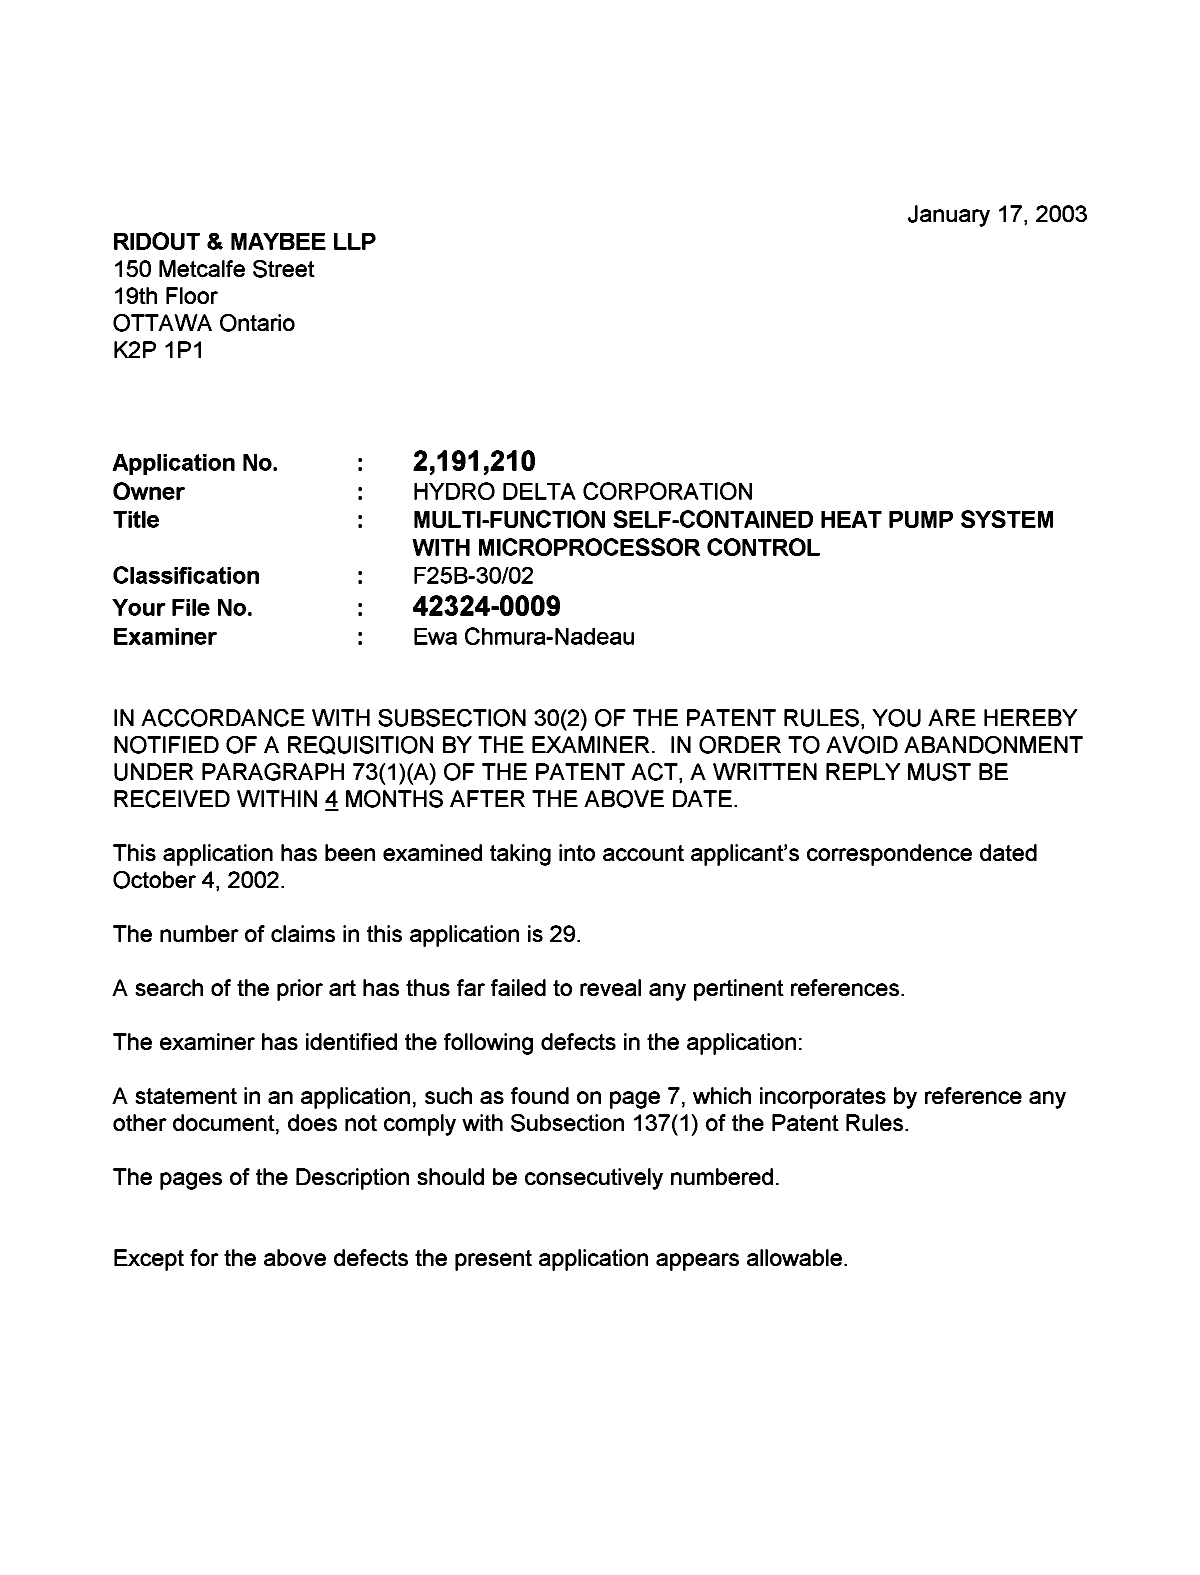 Document de brevet canadien 2191210. Poursuite-Amendment 20030117. Image 1 de 2